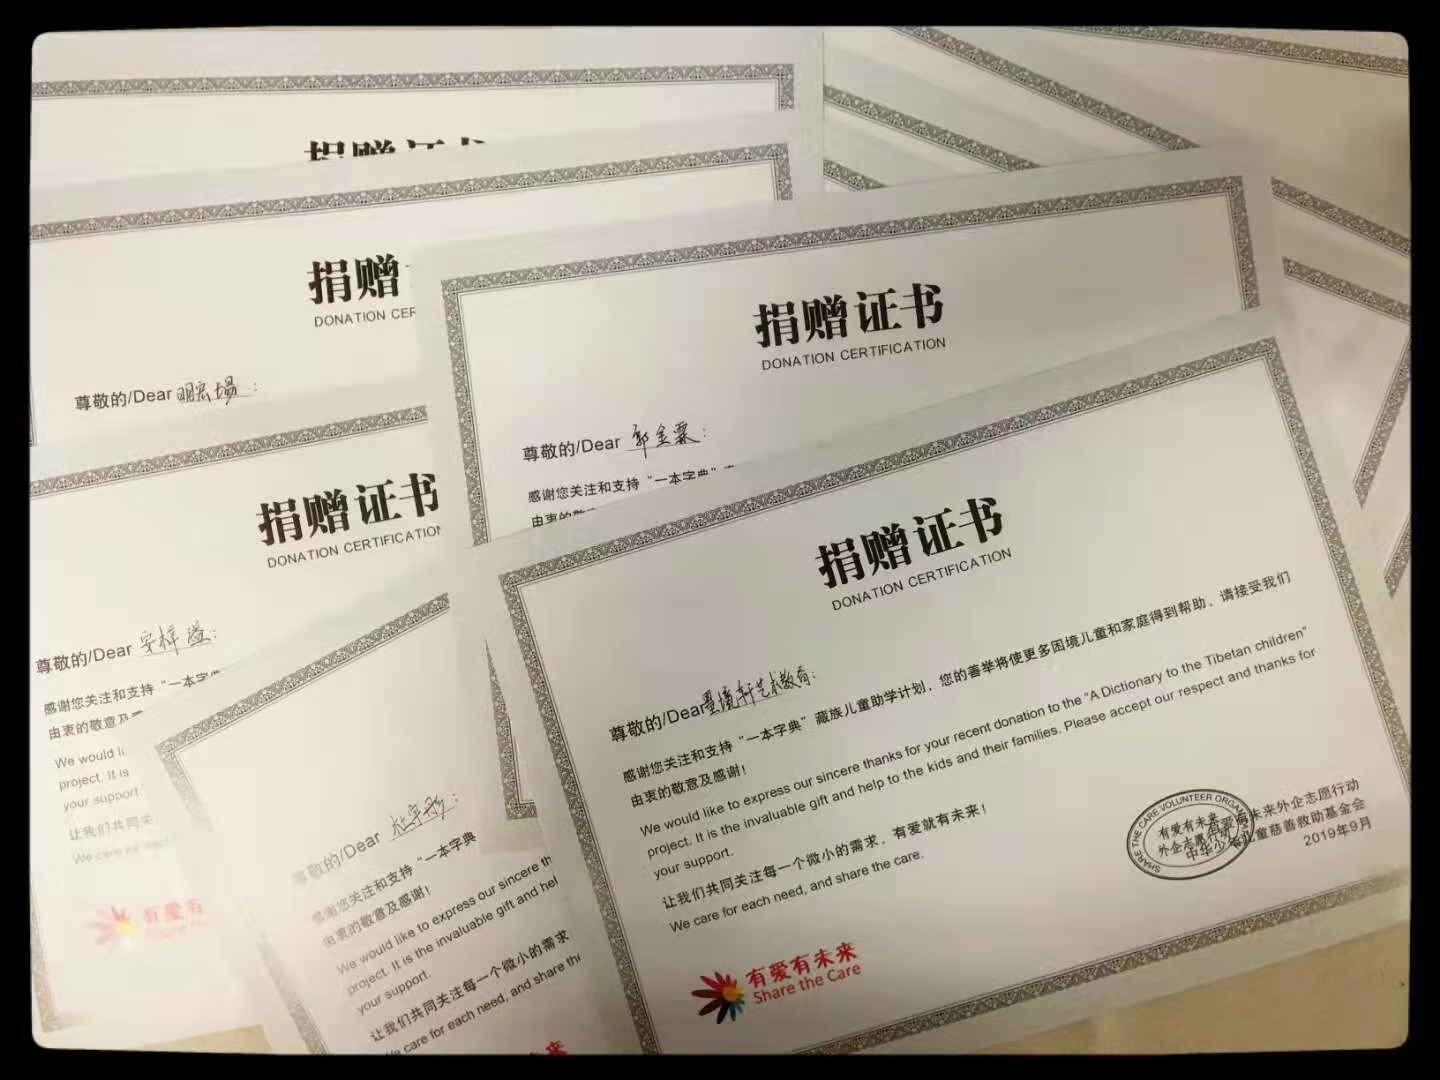 【2019年9月】墨境轩组织学生送藏族孩子一本字典助学活动 活动 第1张